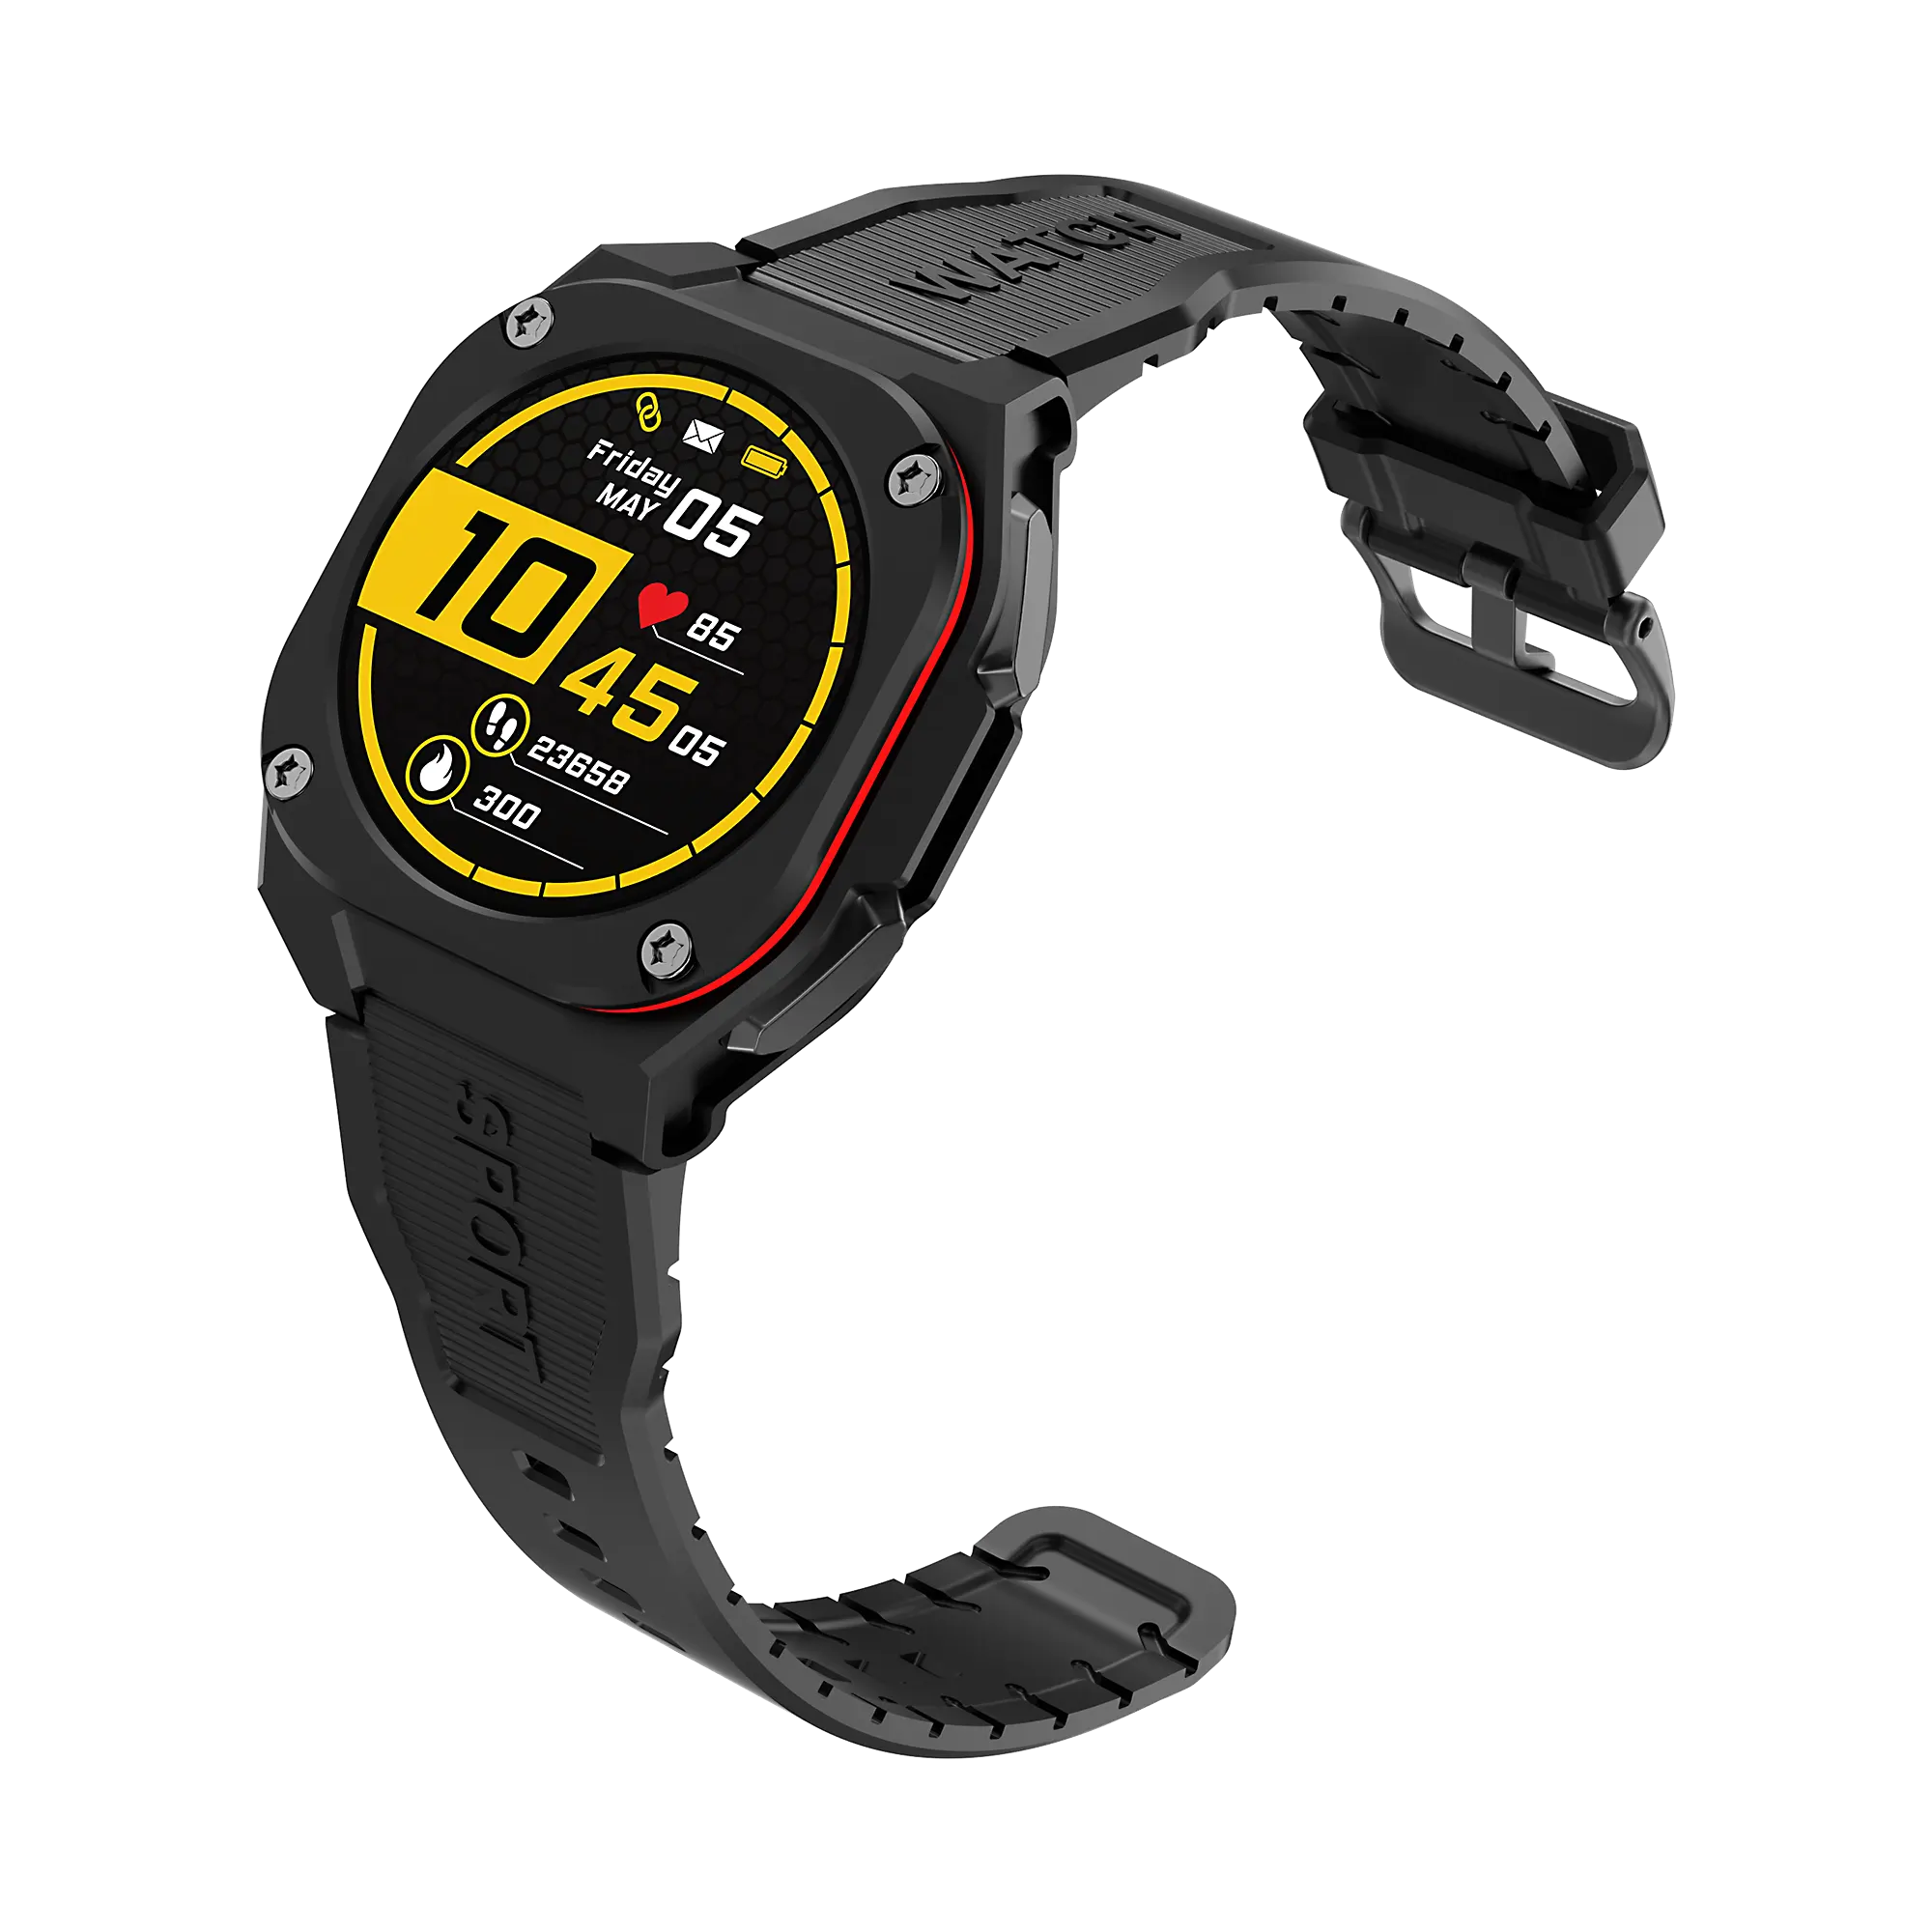 Thiết kế mới kỹ thuật số B3 thể thao đồng hồ Heart Rate Giám sát tập thể dục đồng hồ thông minh Sport đồng hồ